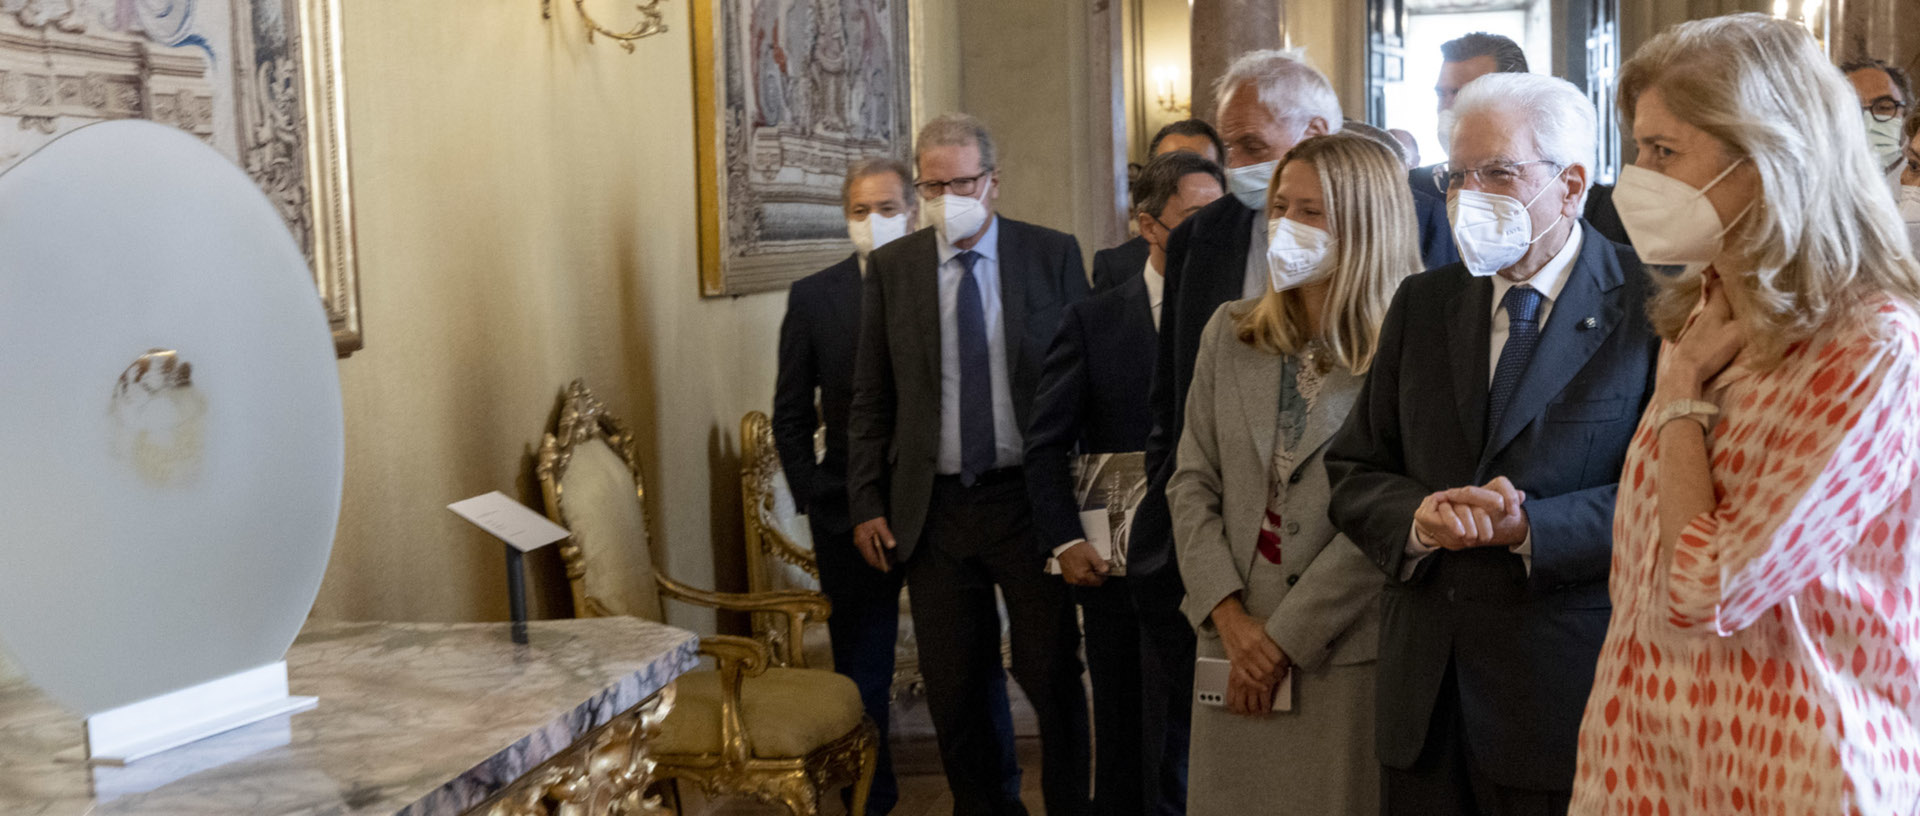 The President of the Italian Republic Sergio Mattarella inaugurates the "Quirinale Contemporaneo" project